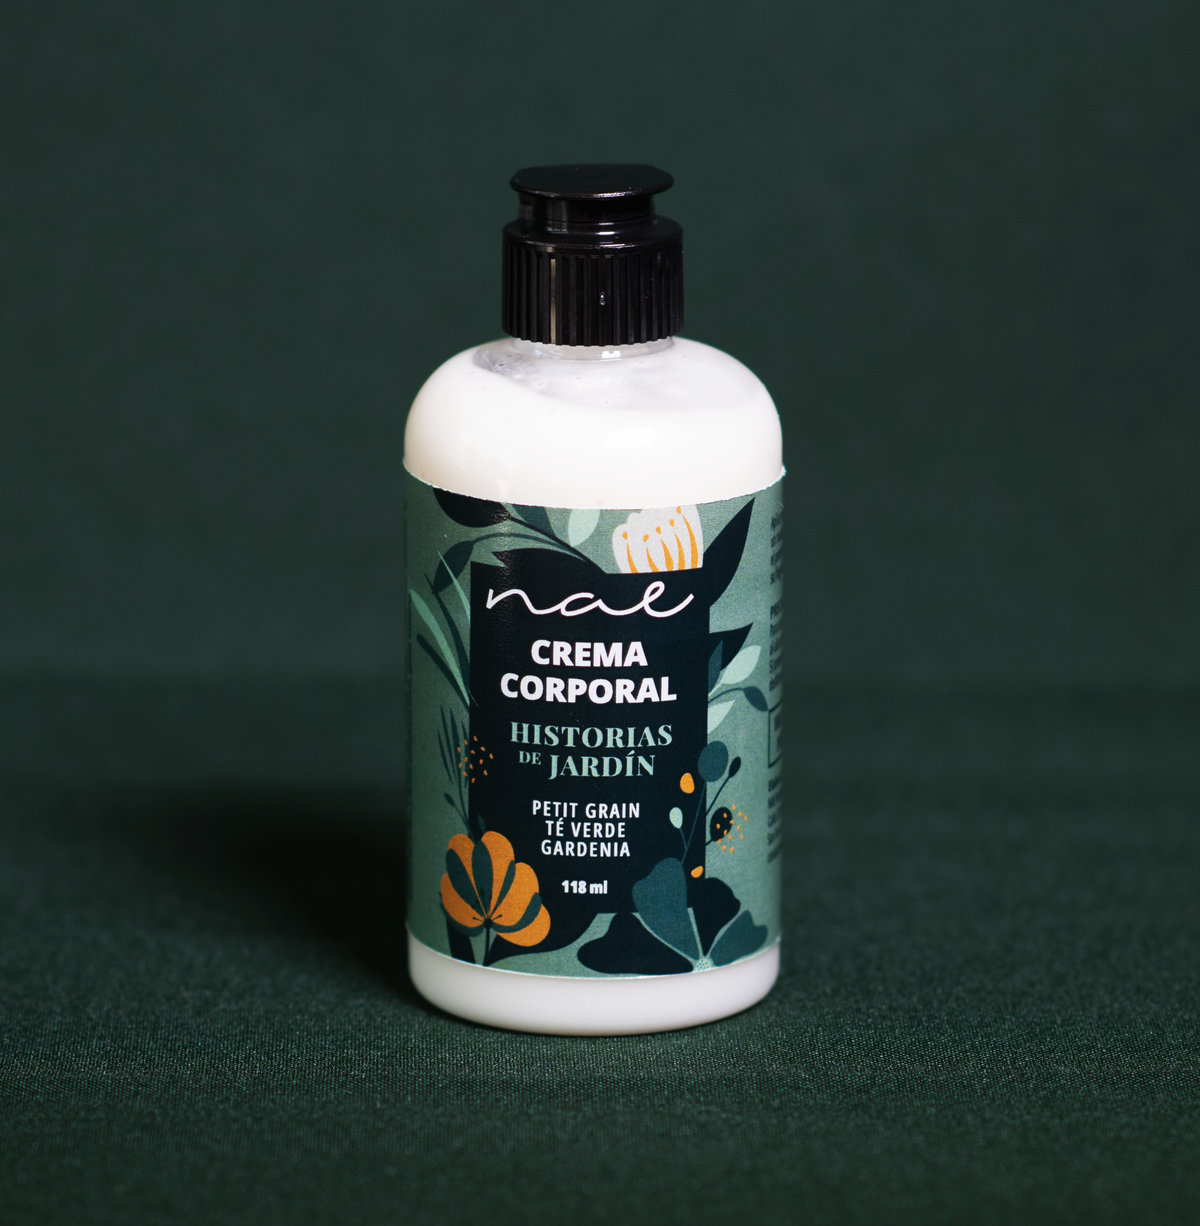 Crema corporal hidratante con aceites esenciales Historias de jardín Petit grain, té verde, gardenia